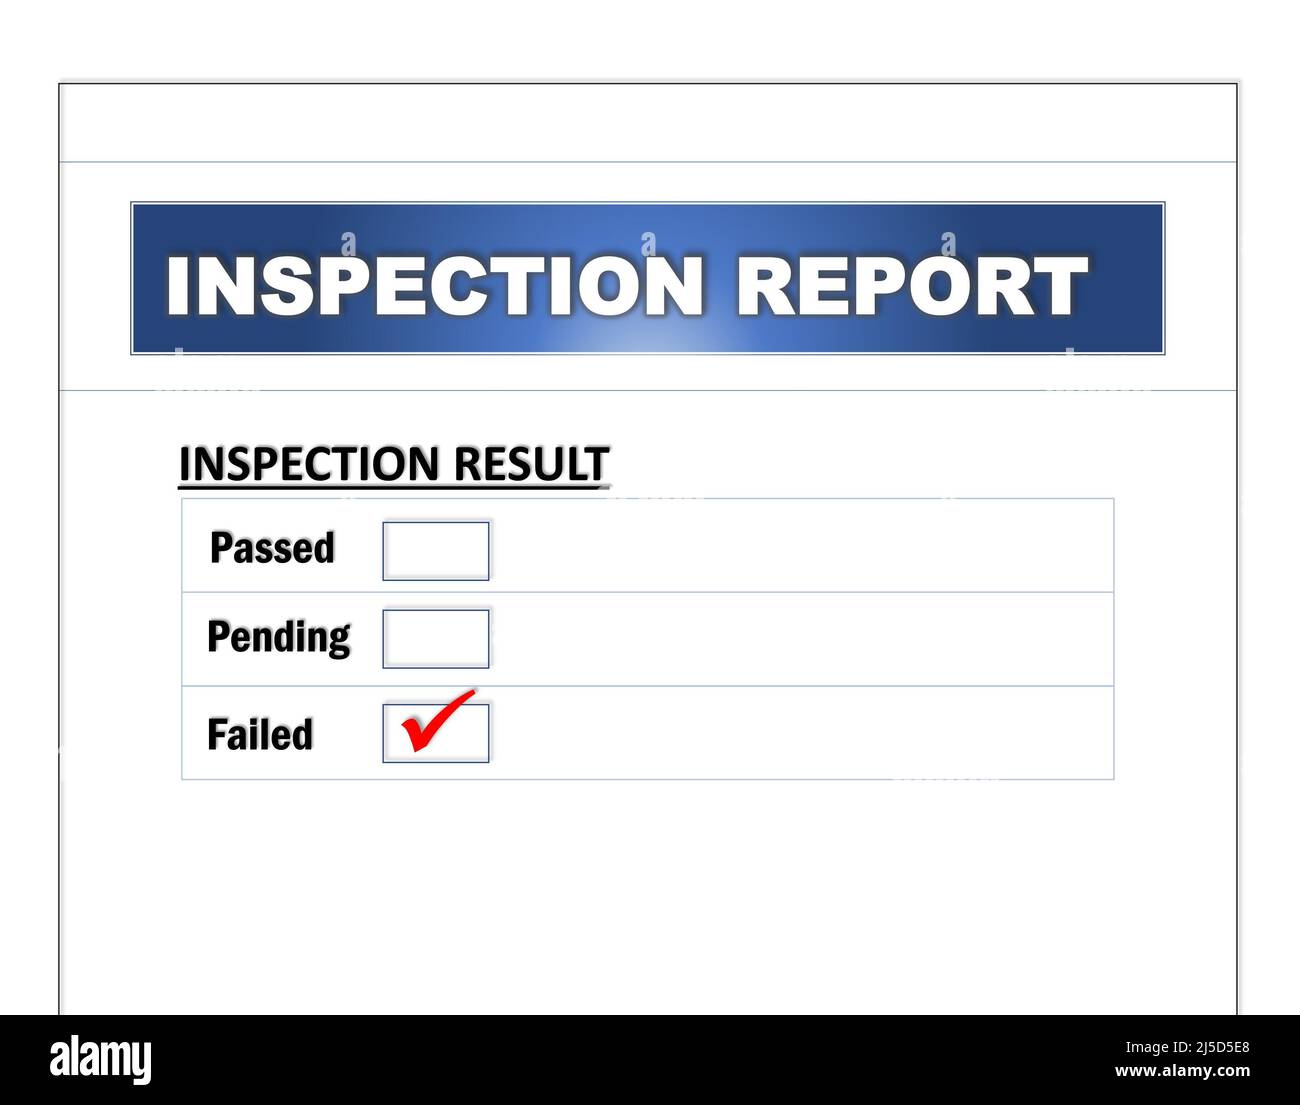 El formulario Informe de inspección contiene los resultados de las casillas de verificación aprobados, pendientes y fallidos que utiliza el personal de auditoría. Concepto de auditoría y negocio. Foto de stock